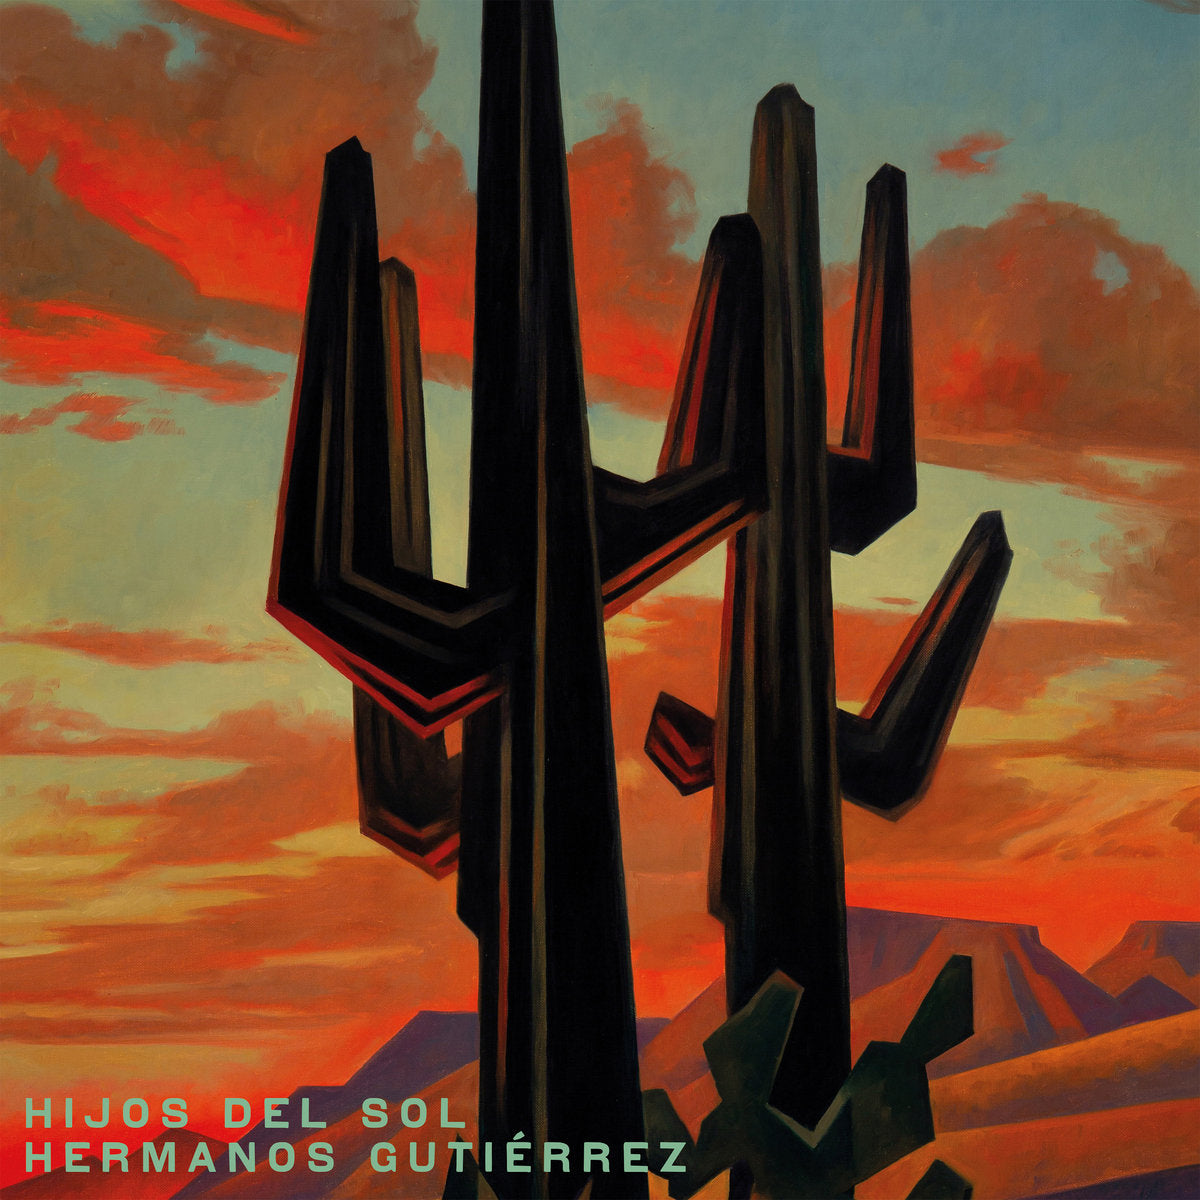 HERMANOS GUTIERREZ - HIJOS DEL SOL Vinyl LP